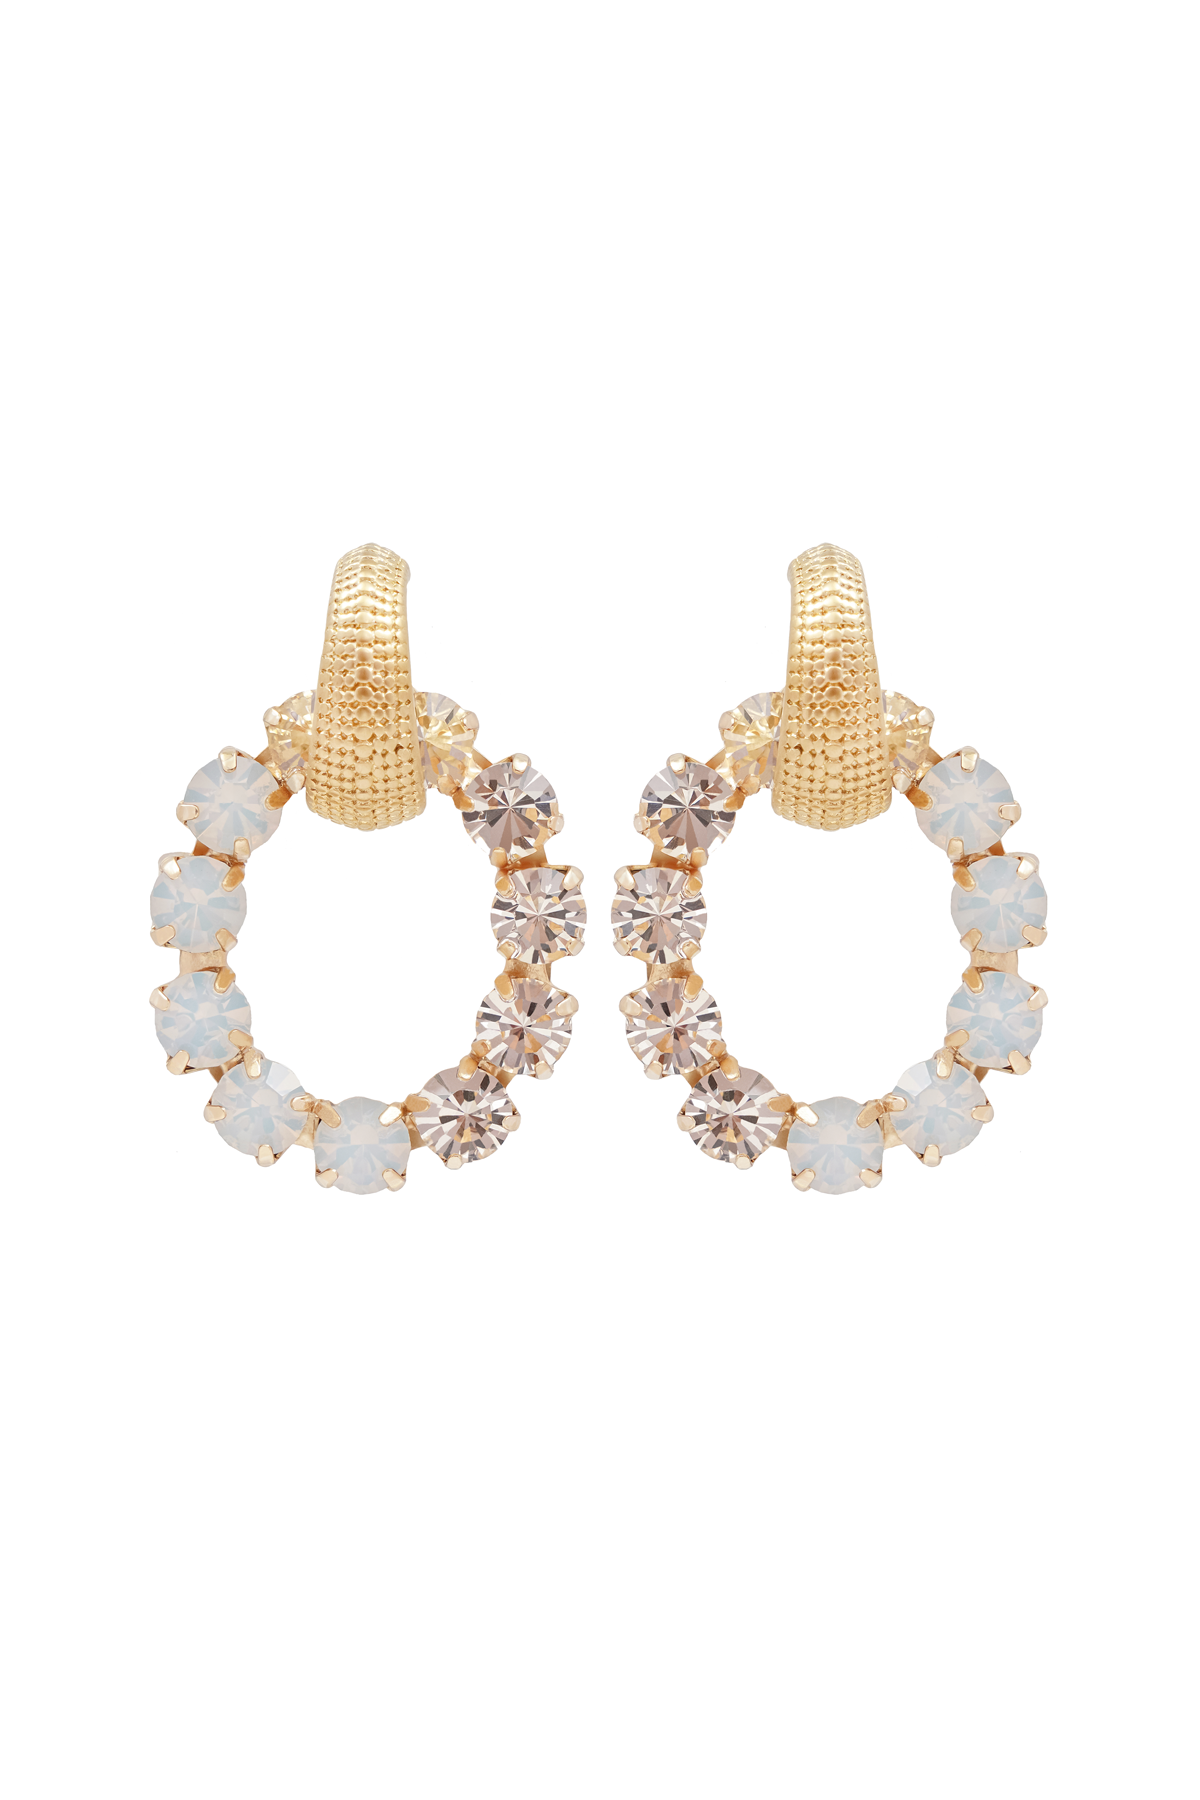 Carolina Swarovski earrings - White opal/Golden